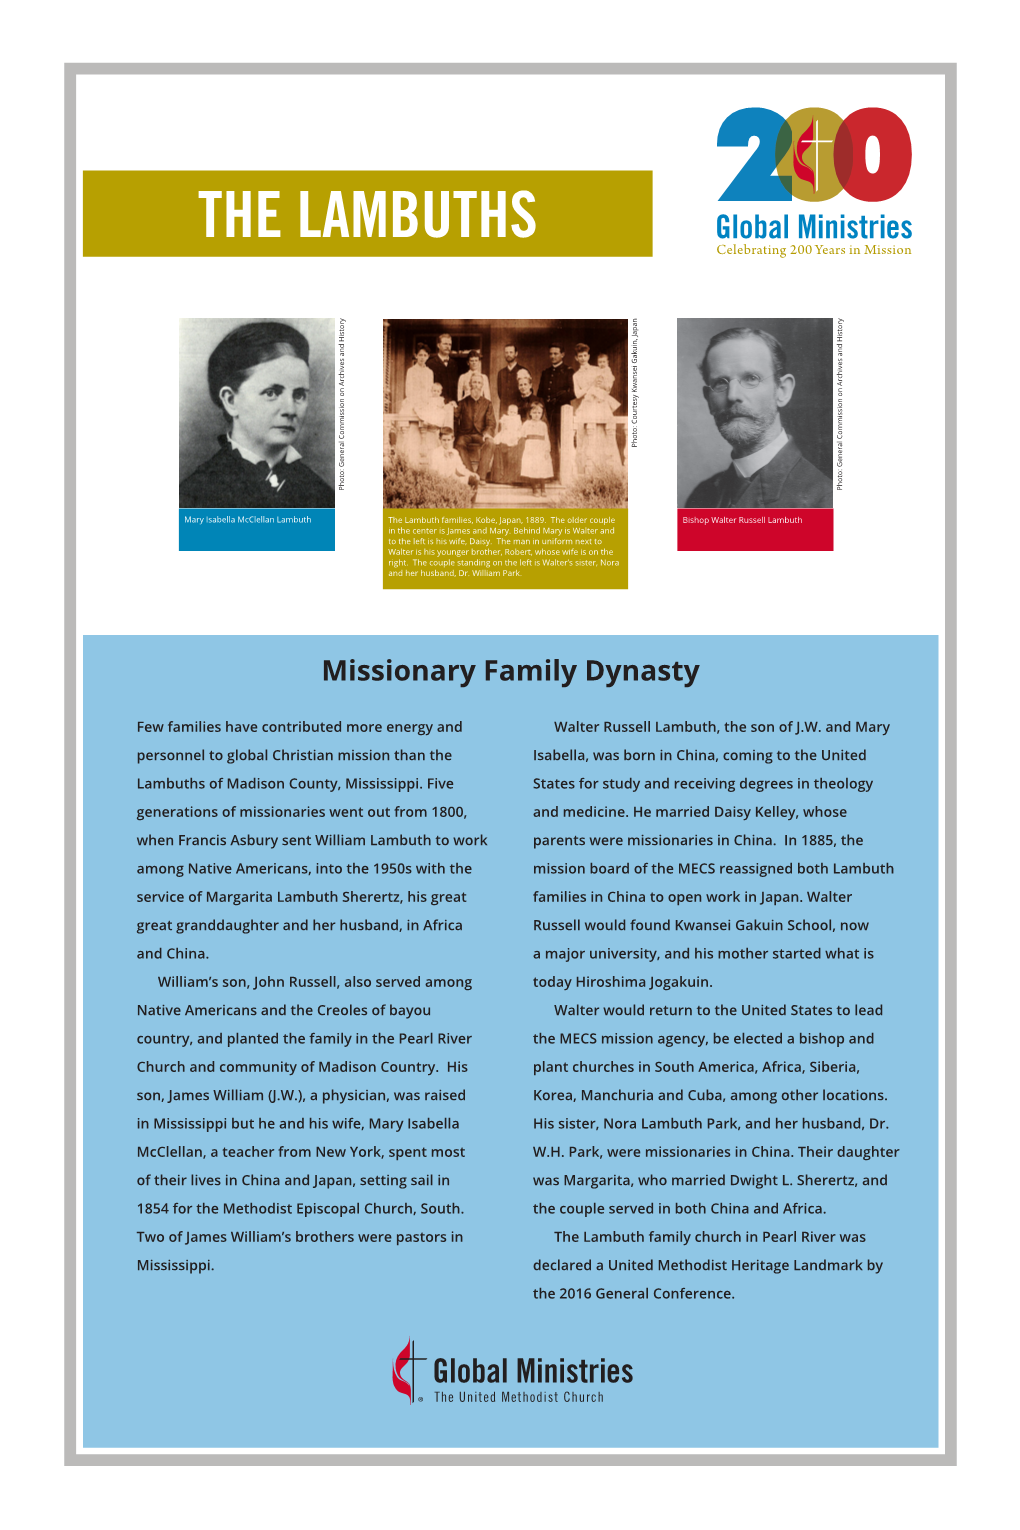 Missionary Family Dynasty